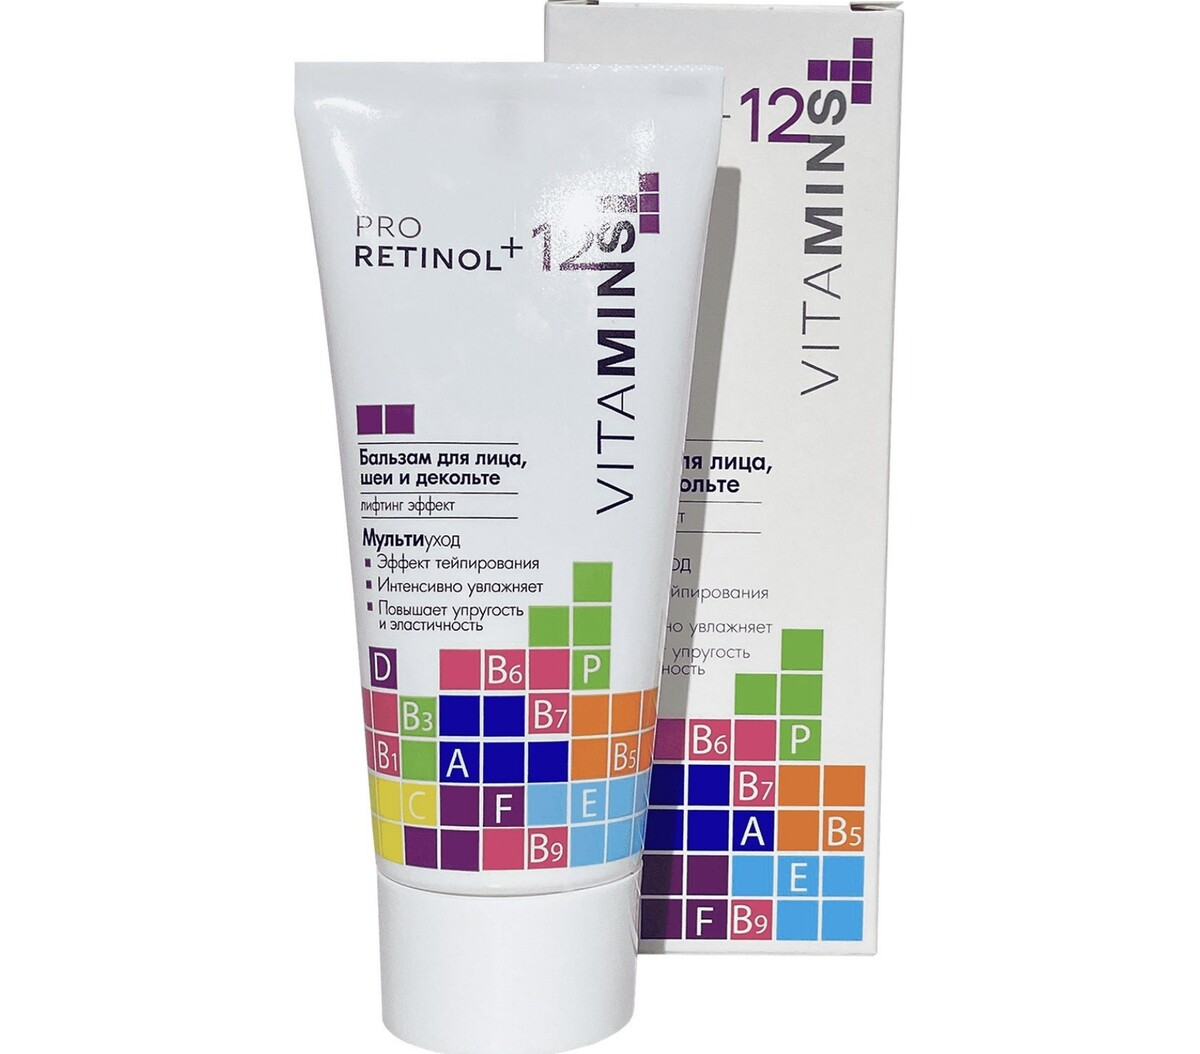 Pro retinol + 12 vitamins бальзам для лица, шеи и декольте, 50г pro retinol 12 vitamins крем филлер для век 25г